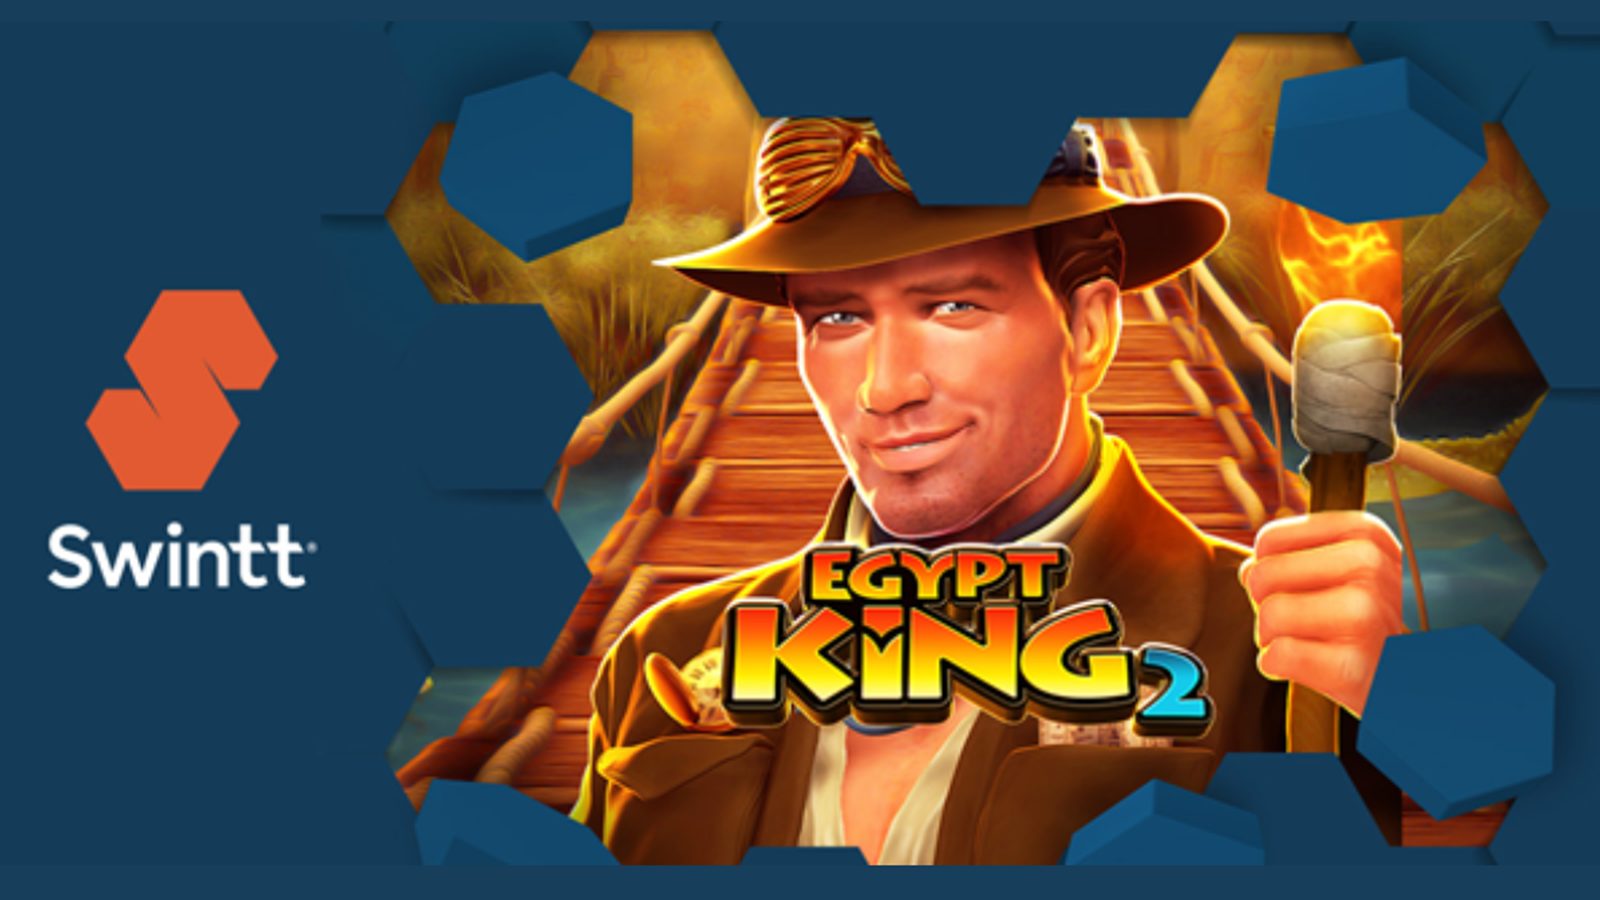 Swintt's Egypt King 2 Premium Game